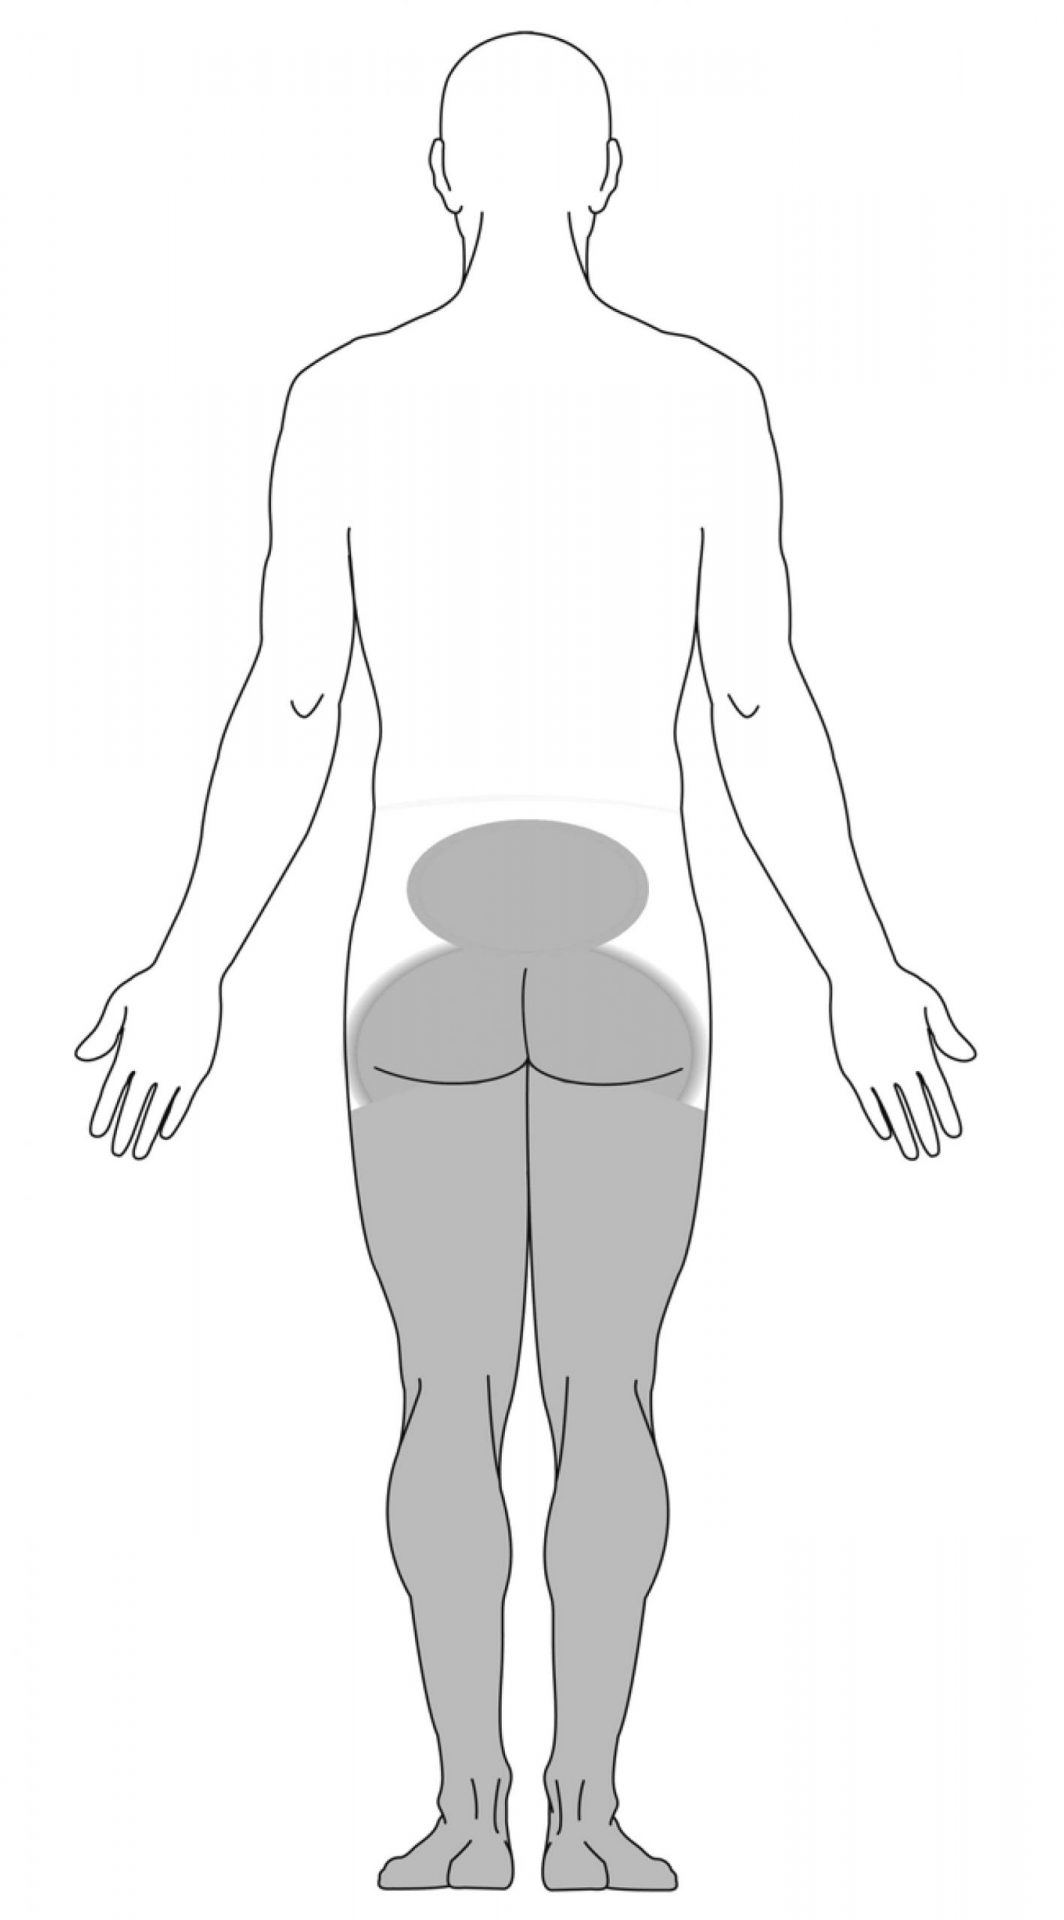 sintomas nas pernas devido à síndrome da cauda equina